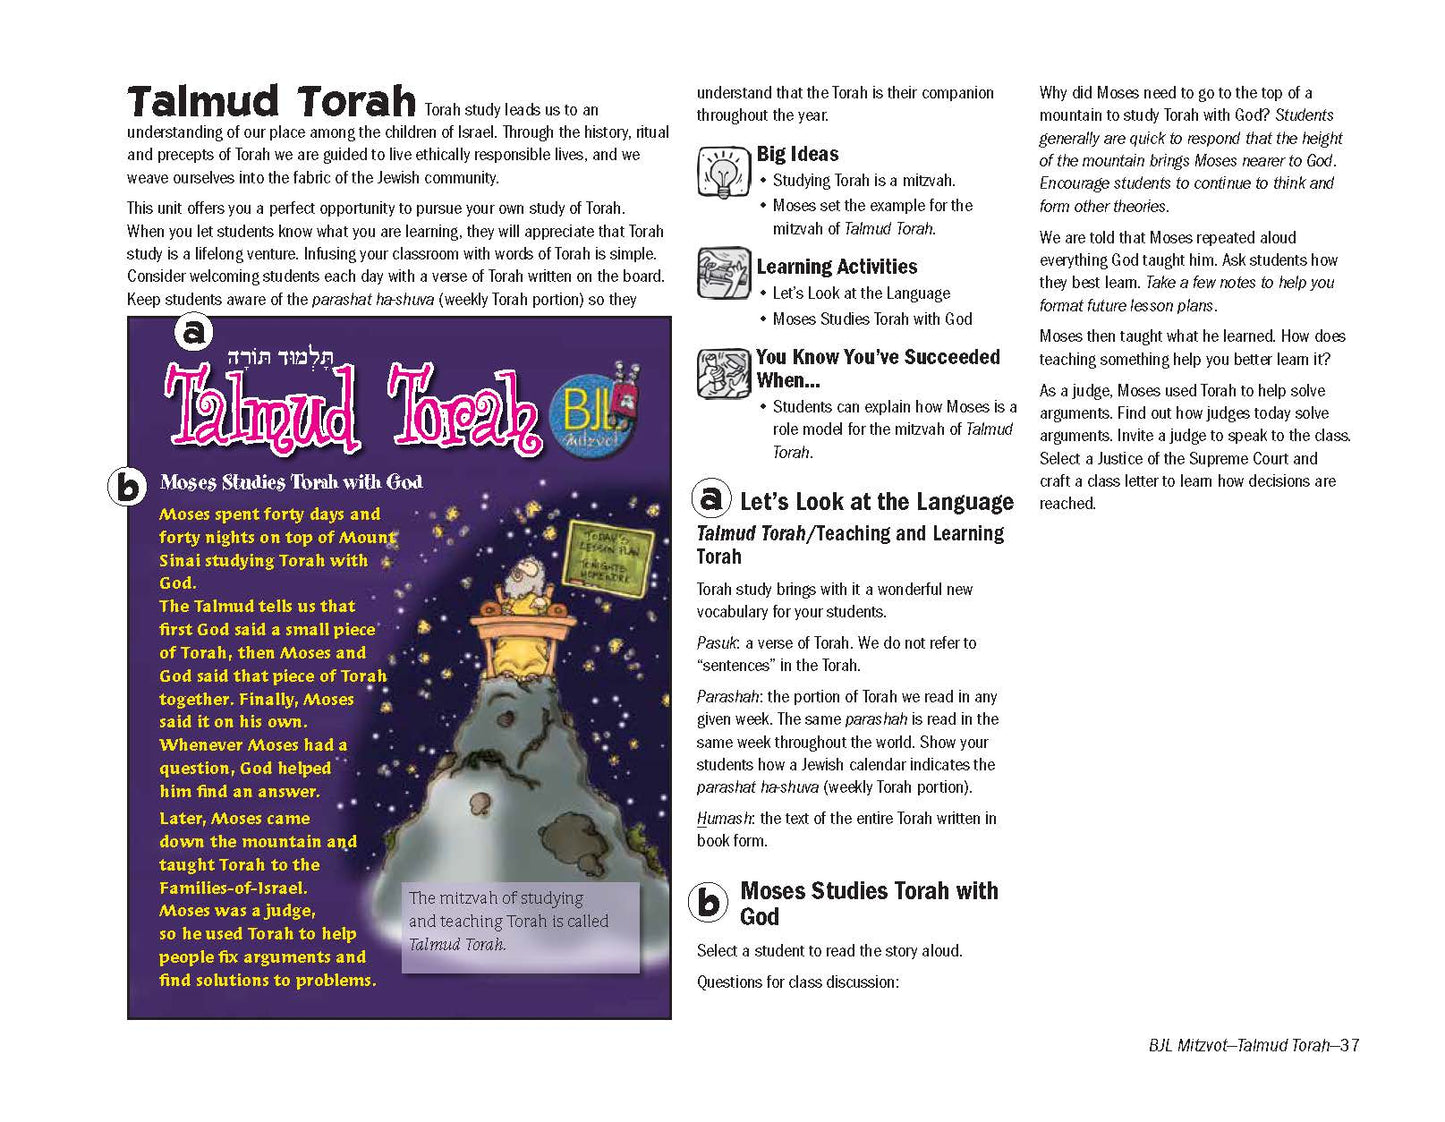 BJL Mitzvot: Talmud Torah